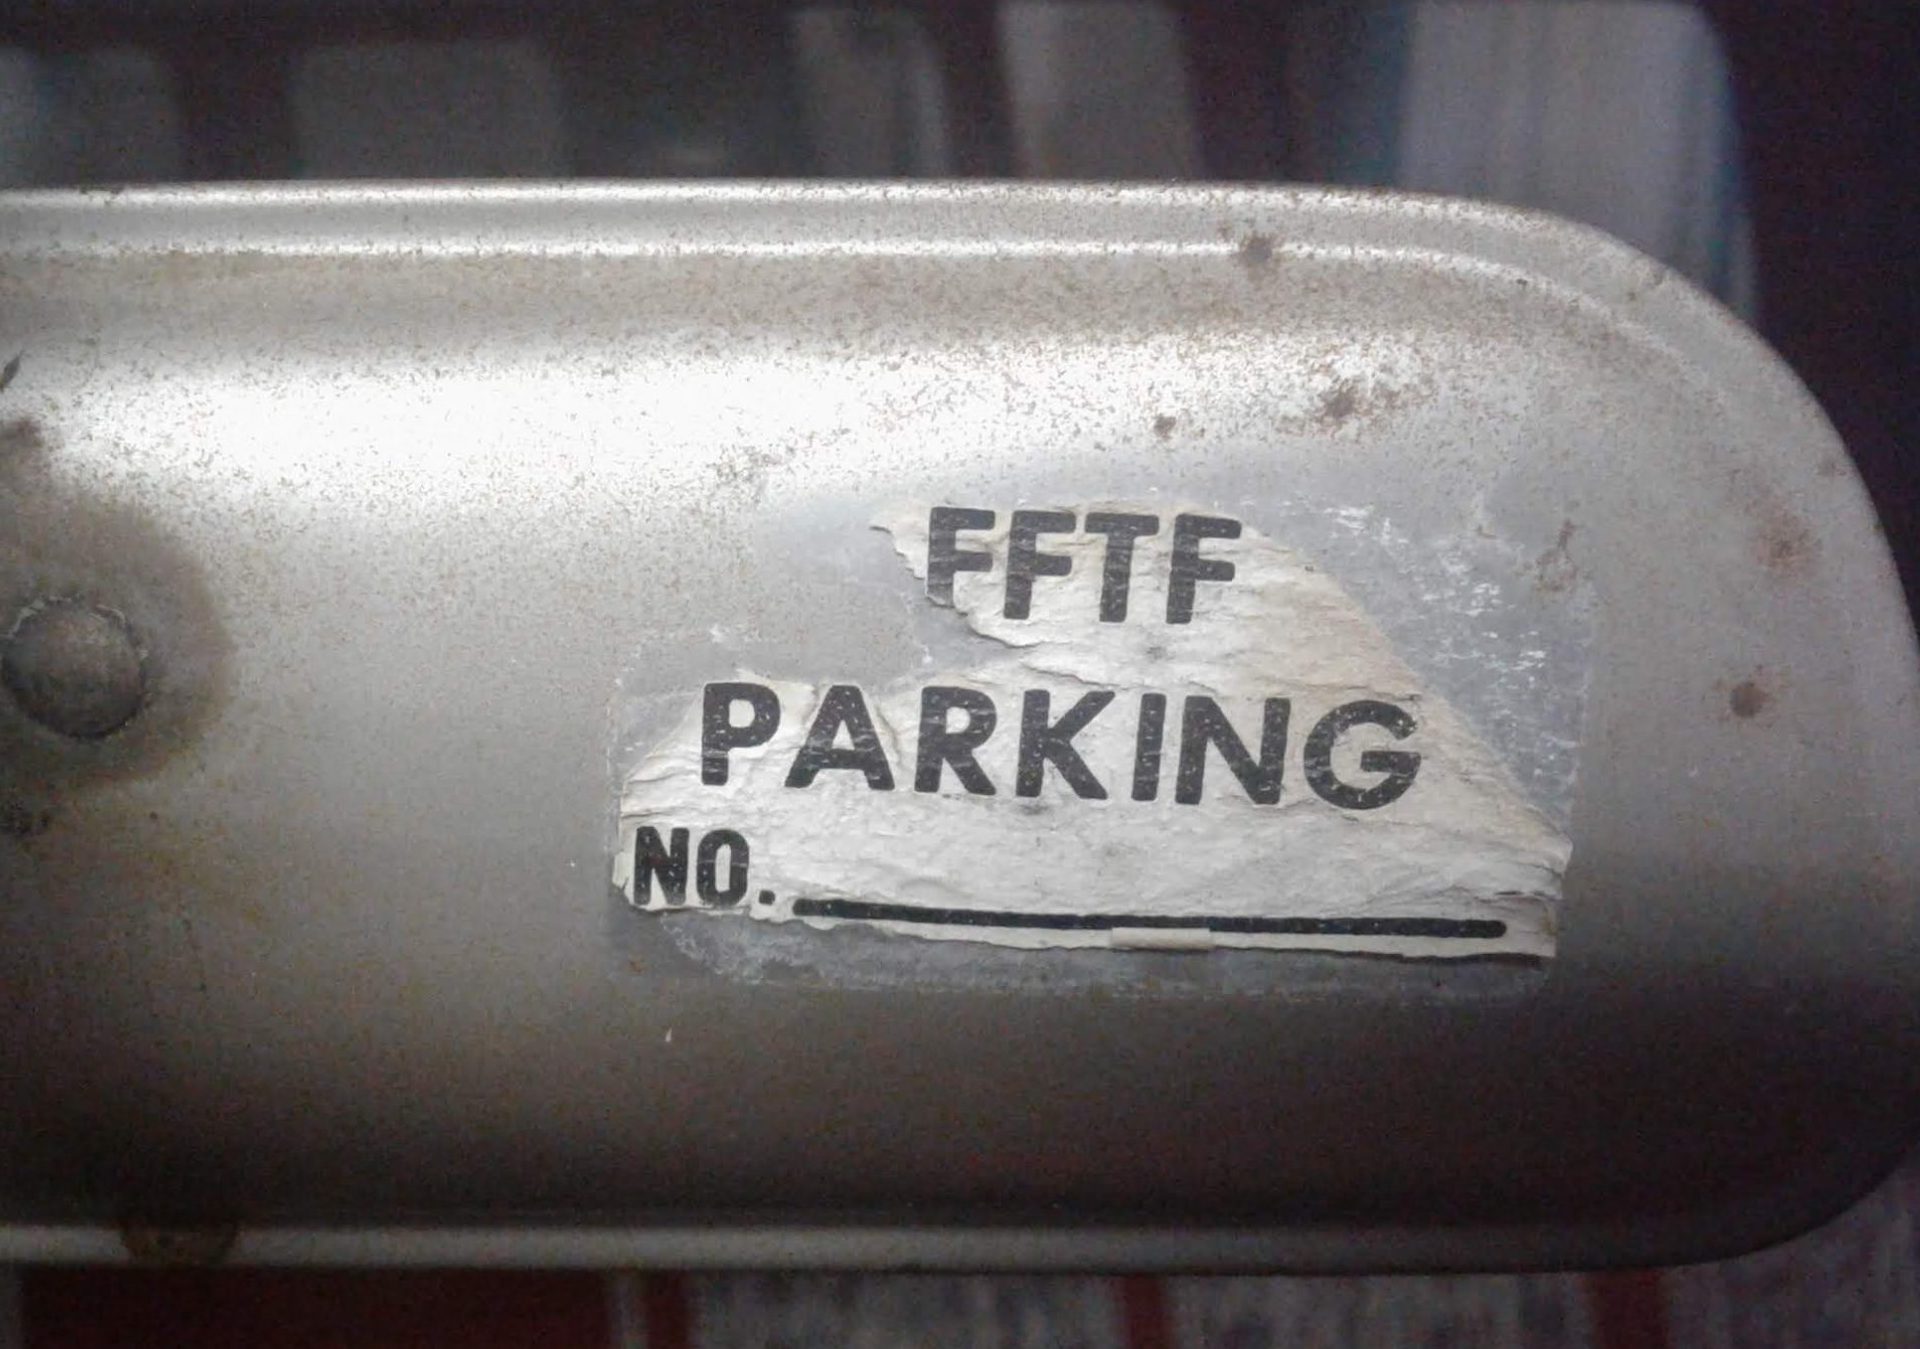 FFTF Parking